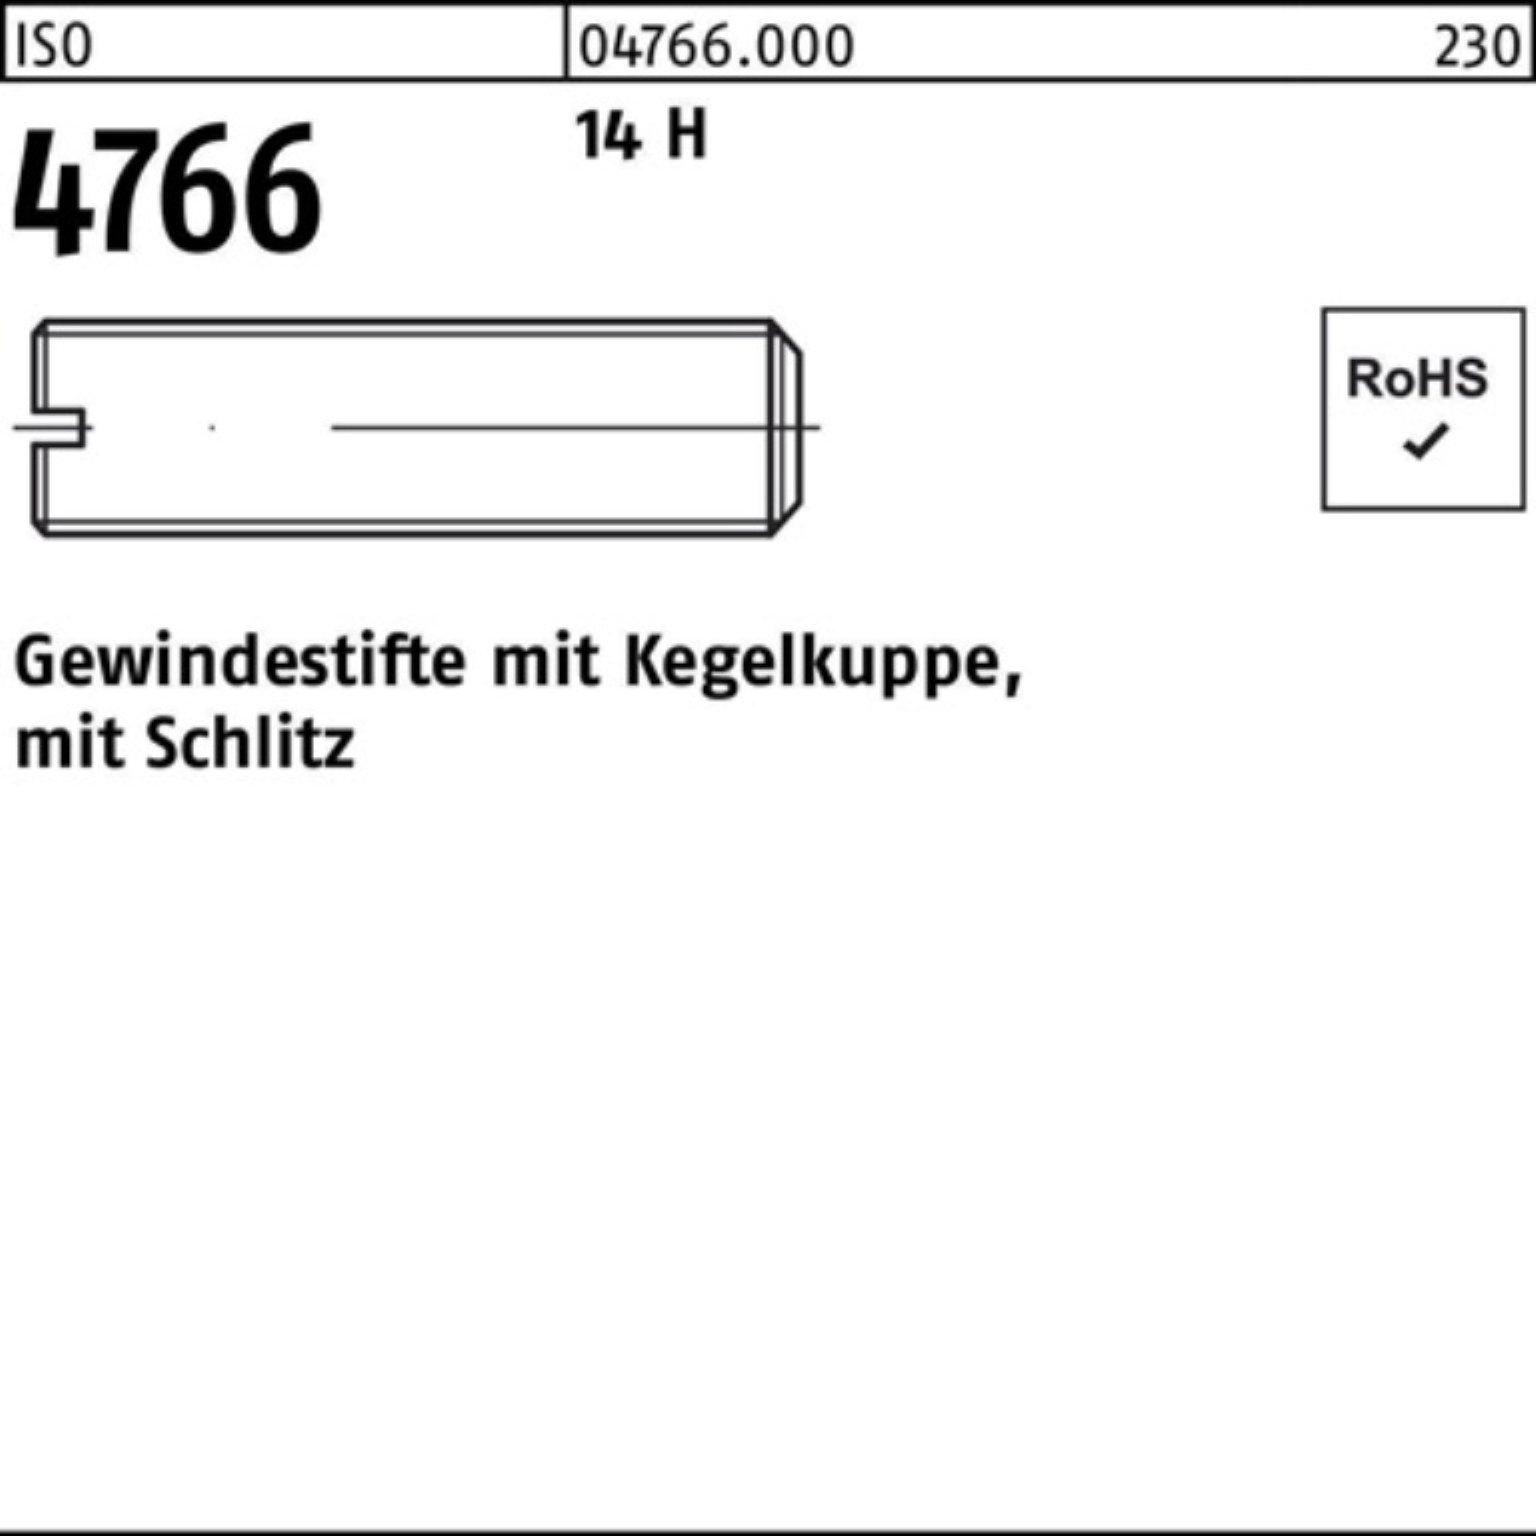 ISO 100er 8 100 14 Gewindebolzen St H M10x 4766 Kegelkuppe/Schlitz Reyher Gewindestift Pack